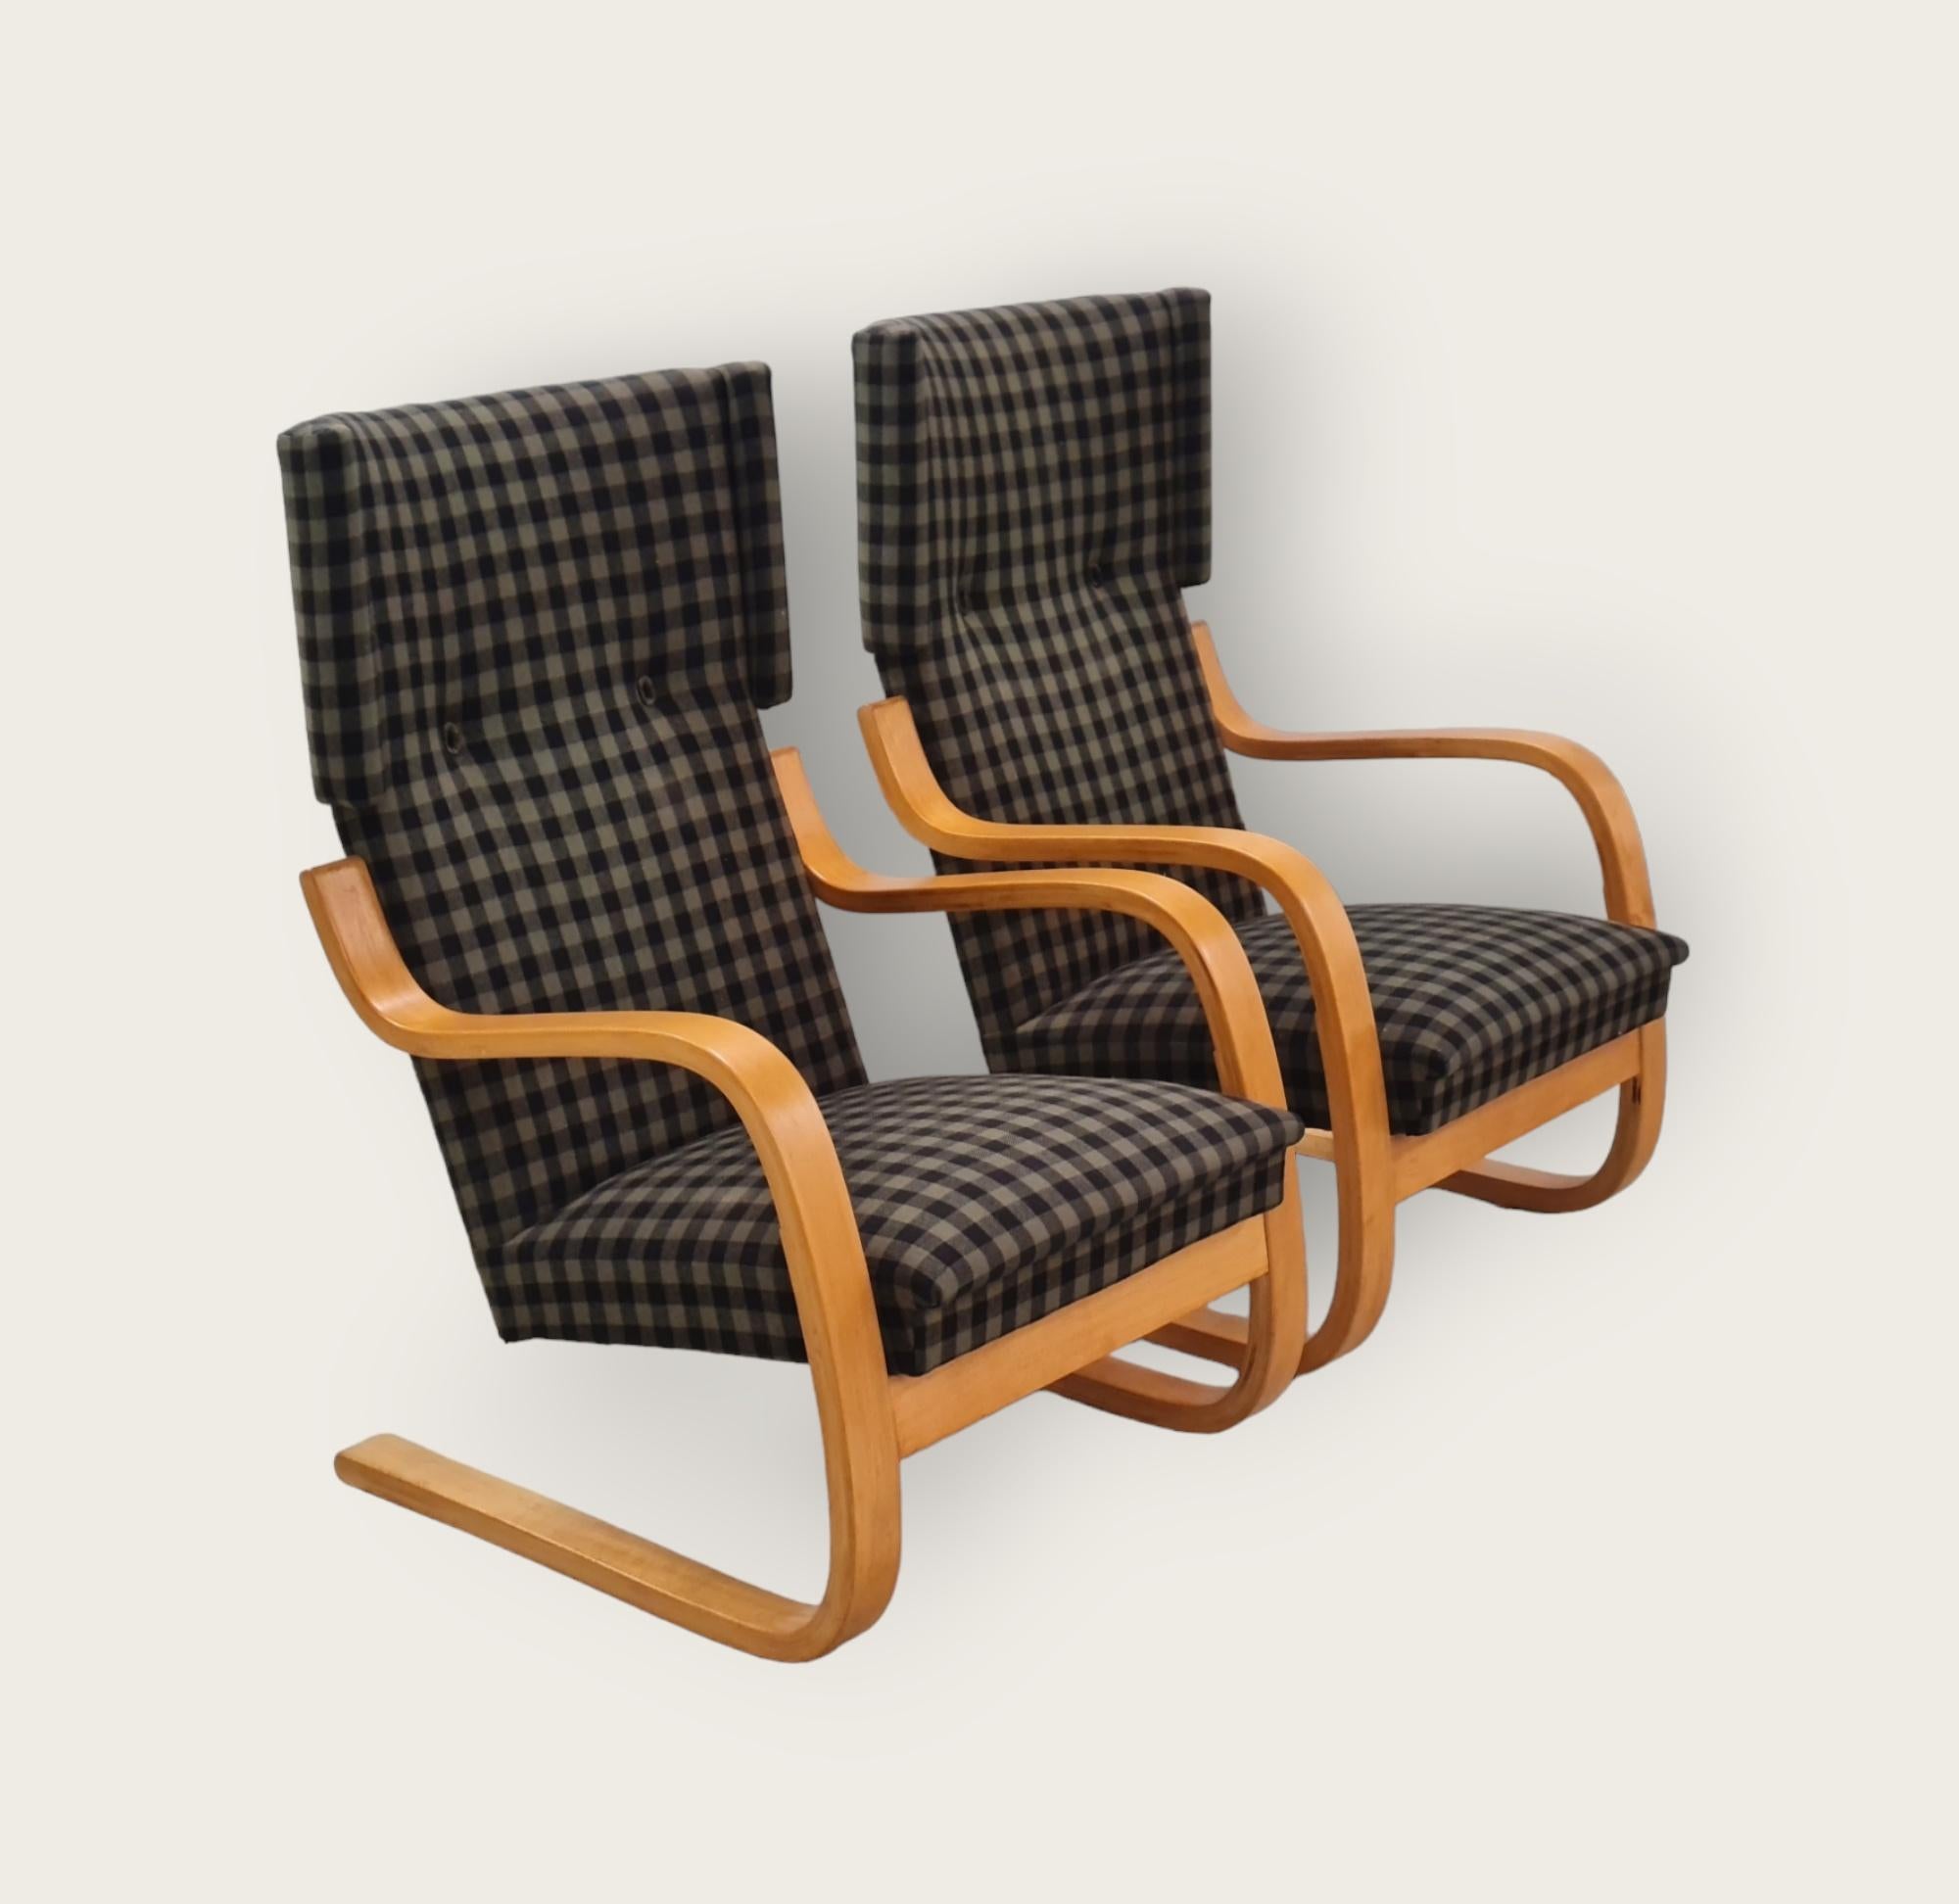 Ein schönes Paar Alvar Aalto Freischwinger aus der Mitte des Jahrhunderts, Modell 401. Dieser Stuhl ähnelt dem ikonischen Pikkupaimio (kleiner Paimio), hat aber eine höhere Rückenlehne und 